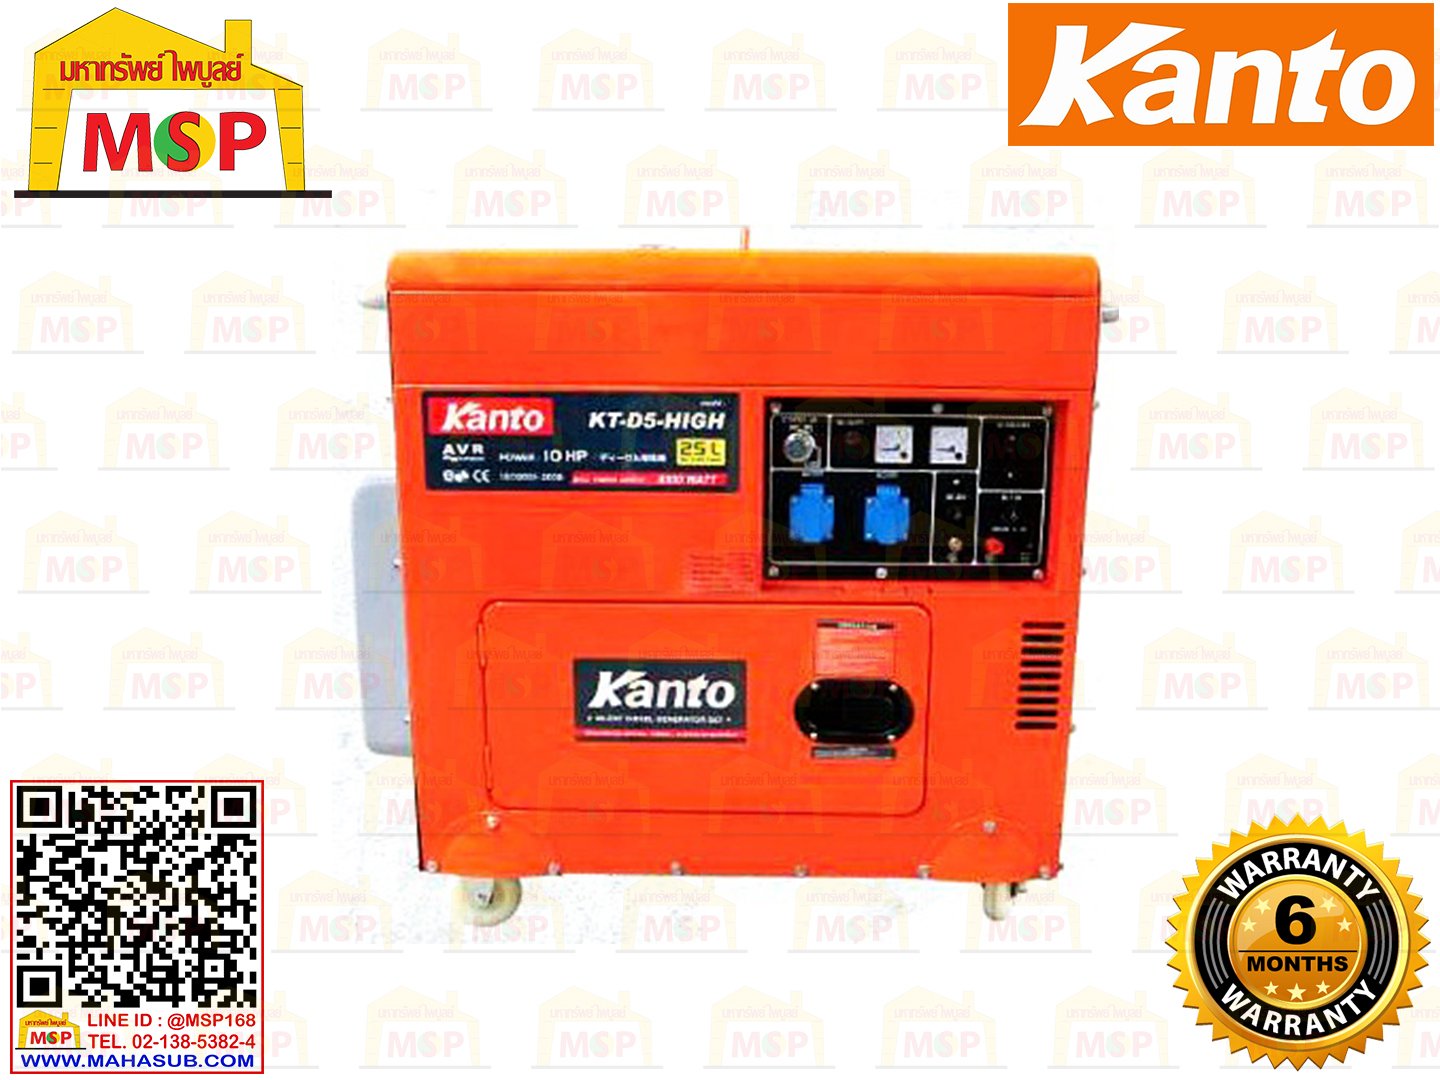 Kanto เครื่องปั่นไฟใช้ดีเซล KT-D5-HIGH 5 KW 220V กุญแจ #NV